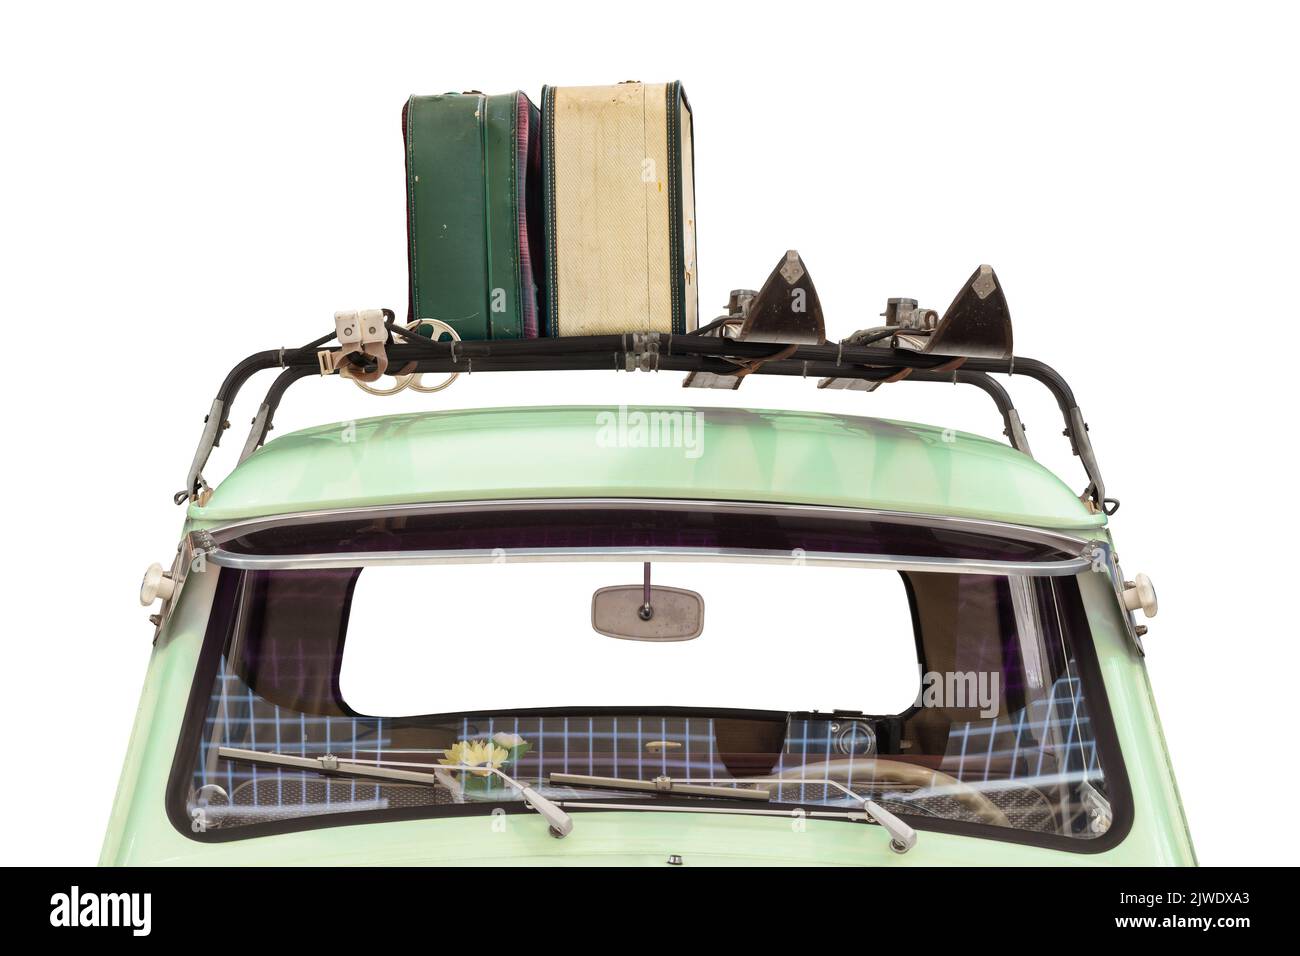 Vista frontal de un coche antiguo con esquís y equipaje adosado a una baca aislada sobre un fondo blanco Foto de stock